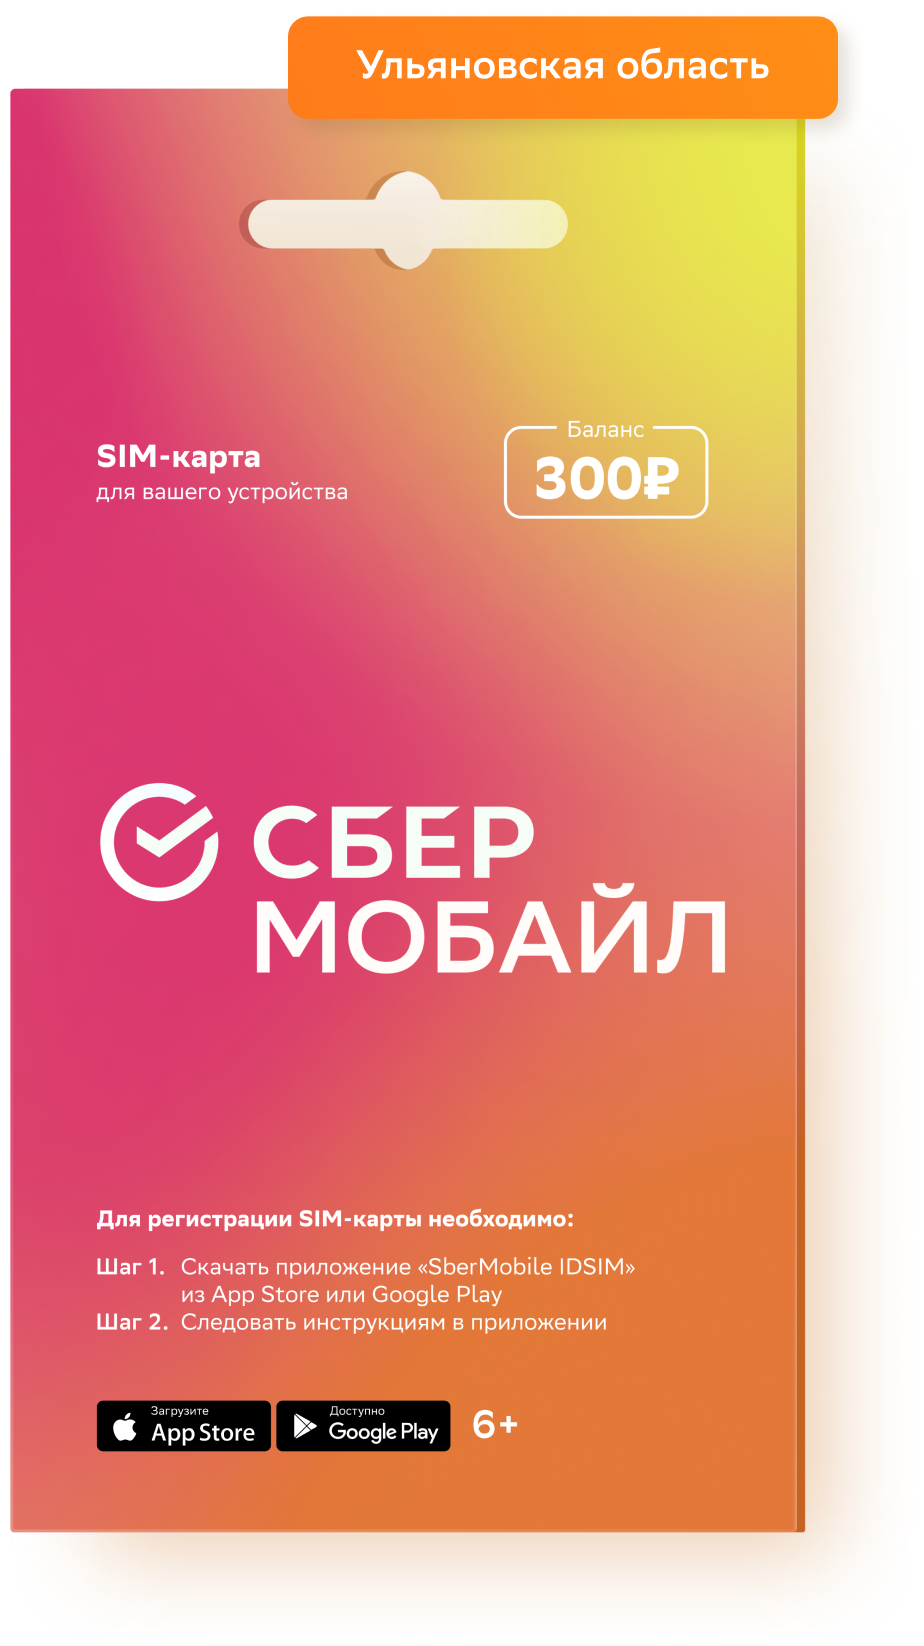 SIM-карта СберМобайл Баланс 300 рублей (Ульяновская обл)